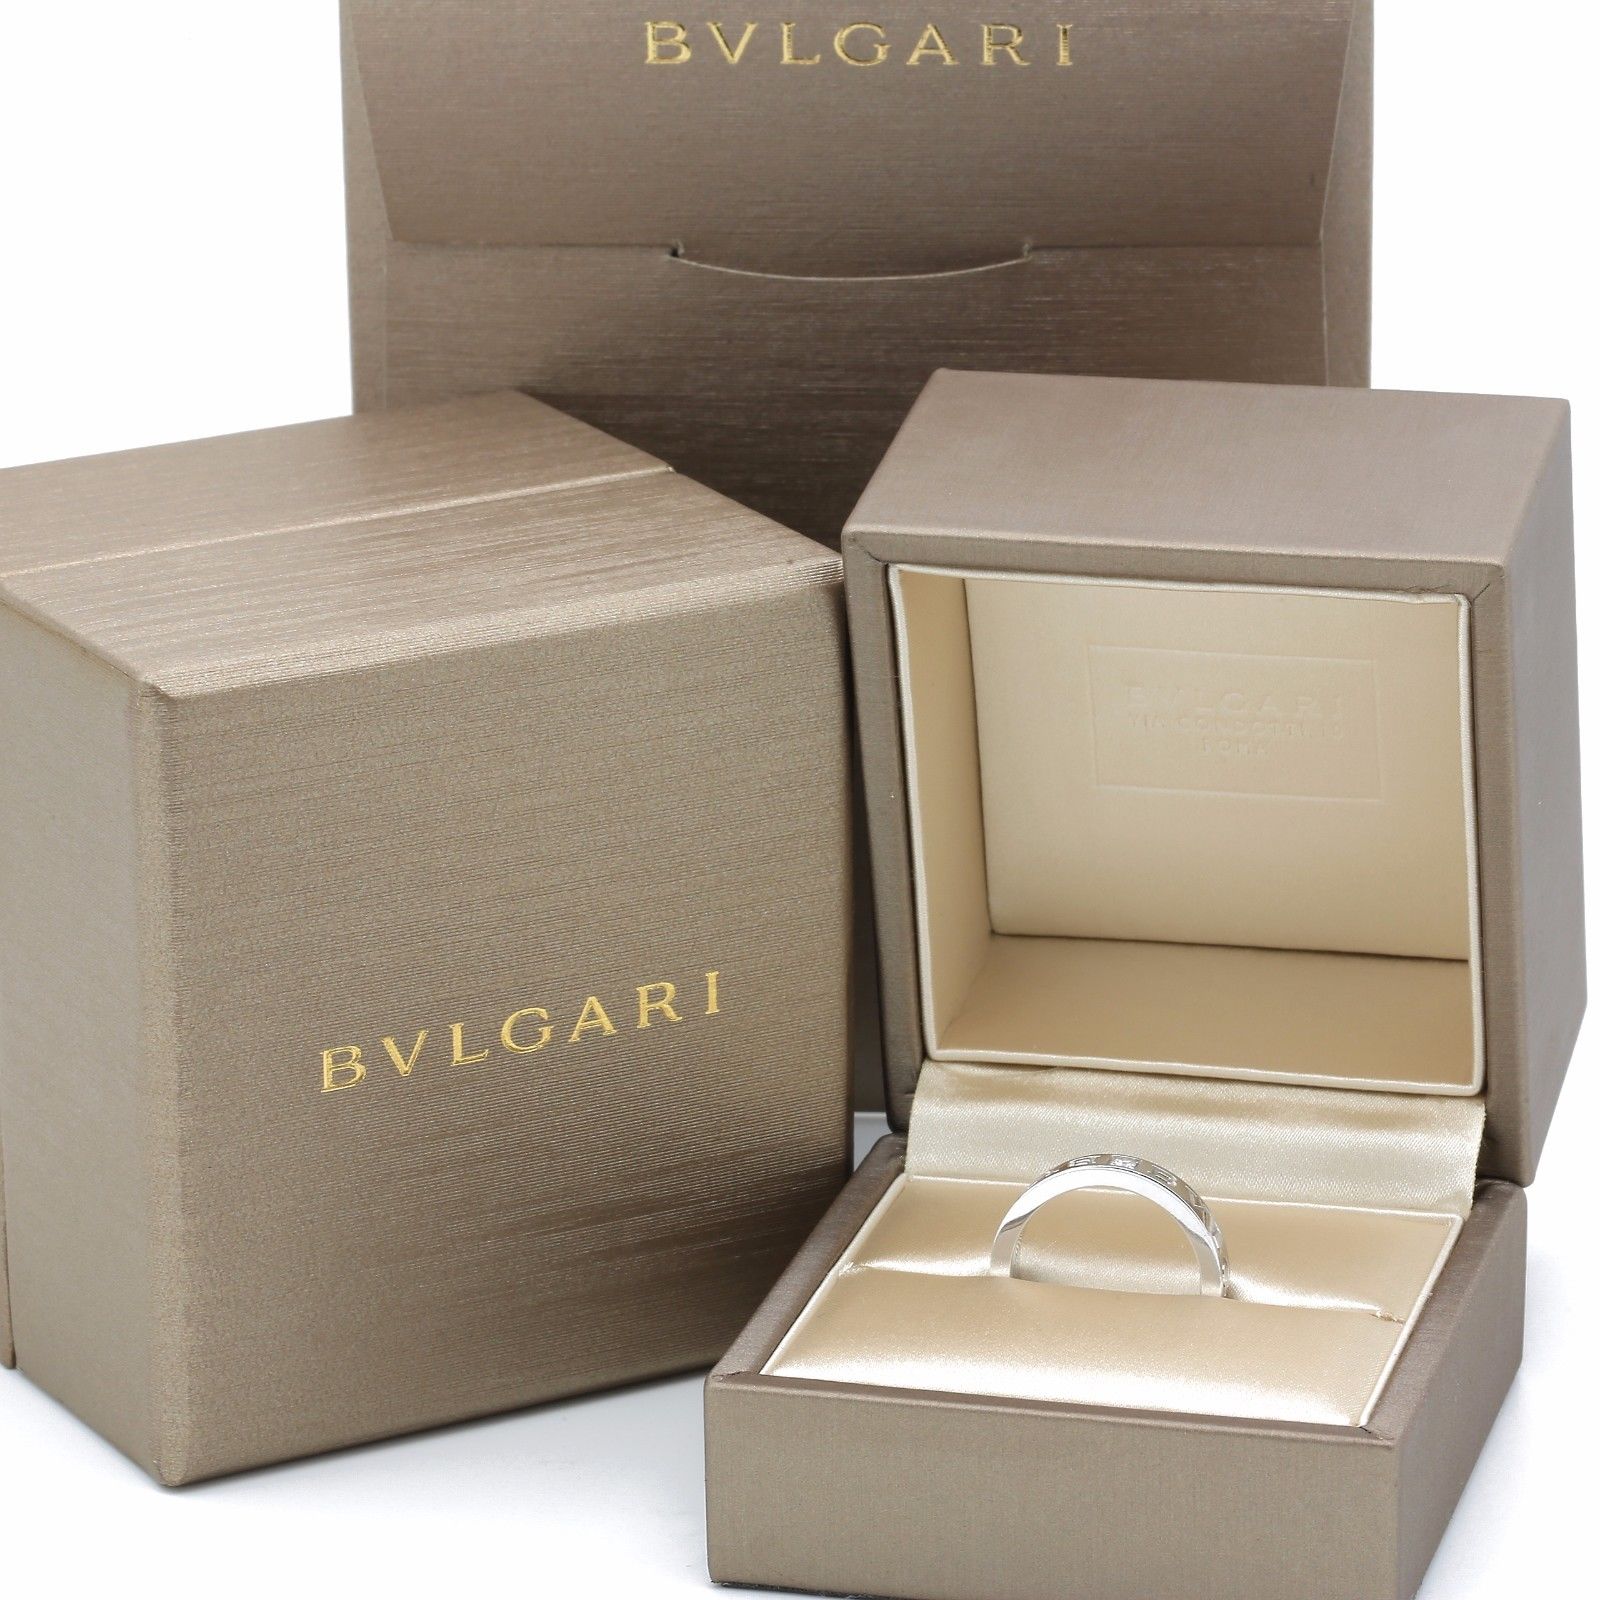 bvlgari jewellery box